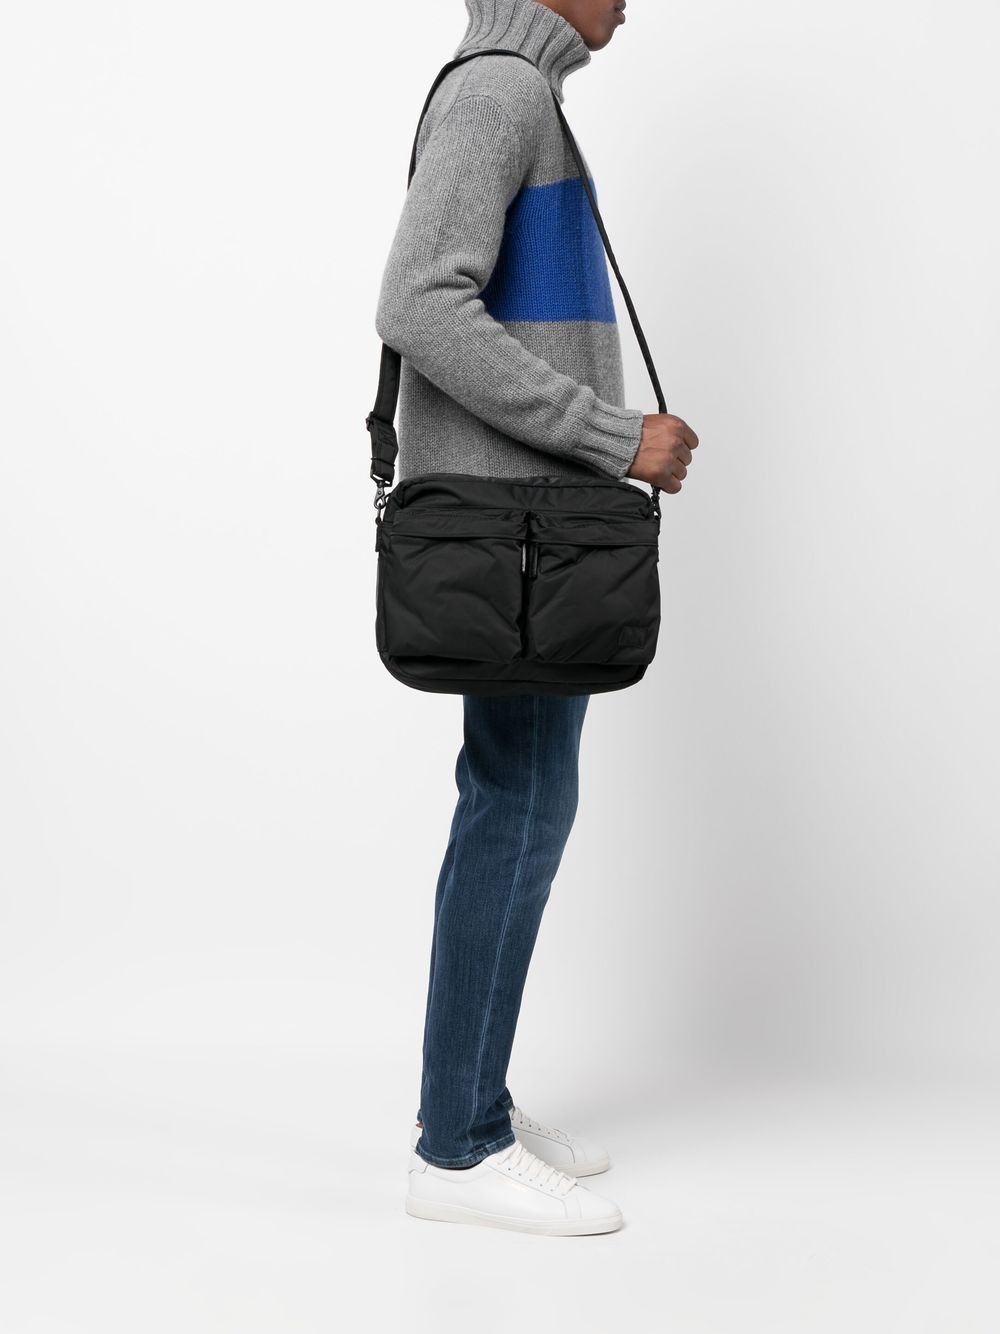 Porter PORTER- Force Shoulder Bag